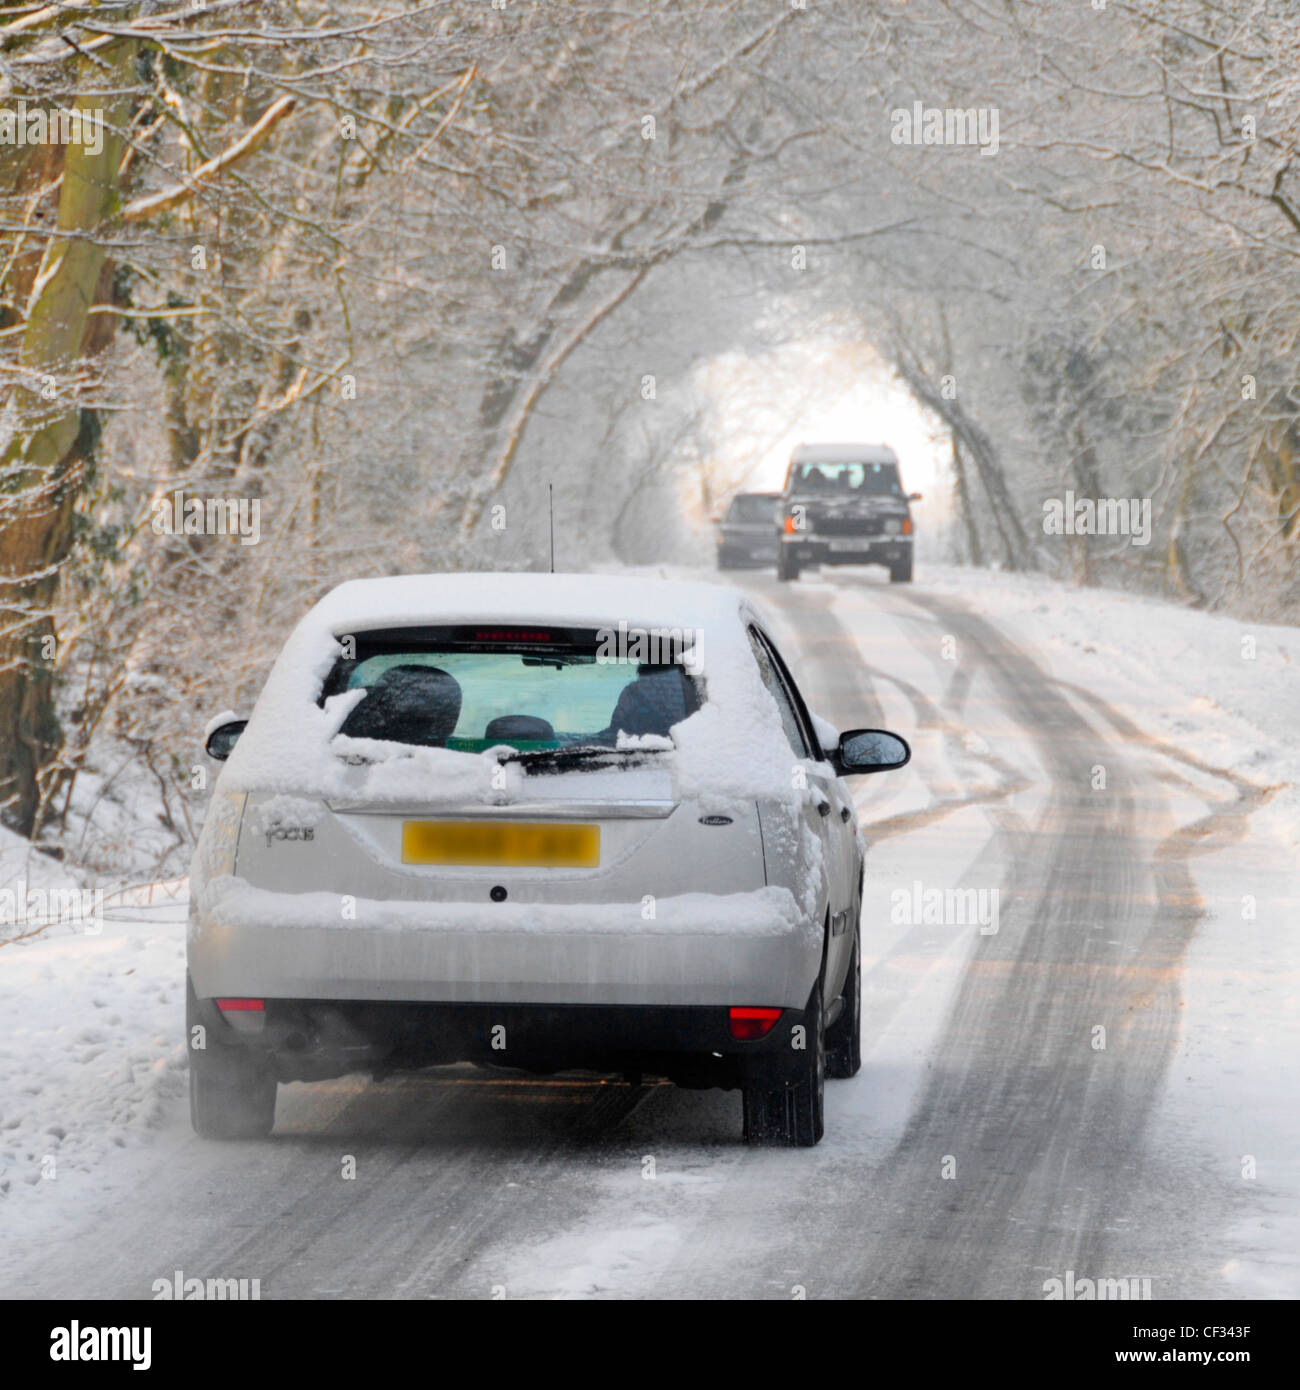 Vue arrière voiture Ford Focus qui laisse la place à la conduite le long de la route de campagne enneigée bordée d'arbres à proximité de la circulation venant en sens inverse hiver Essex Angleterre Royaume-Uni Banque D'Images